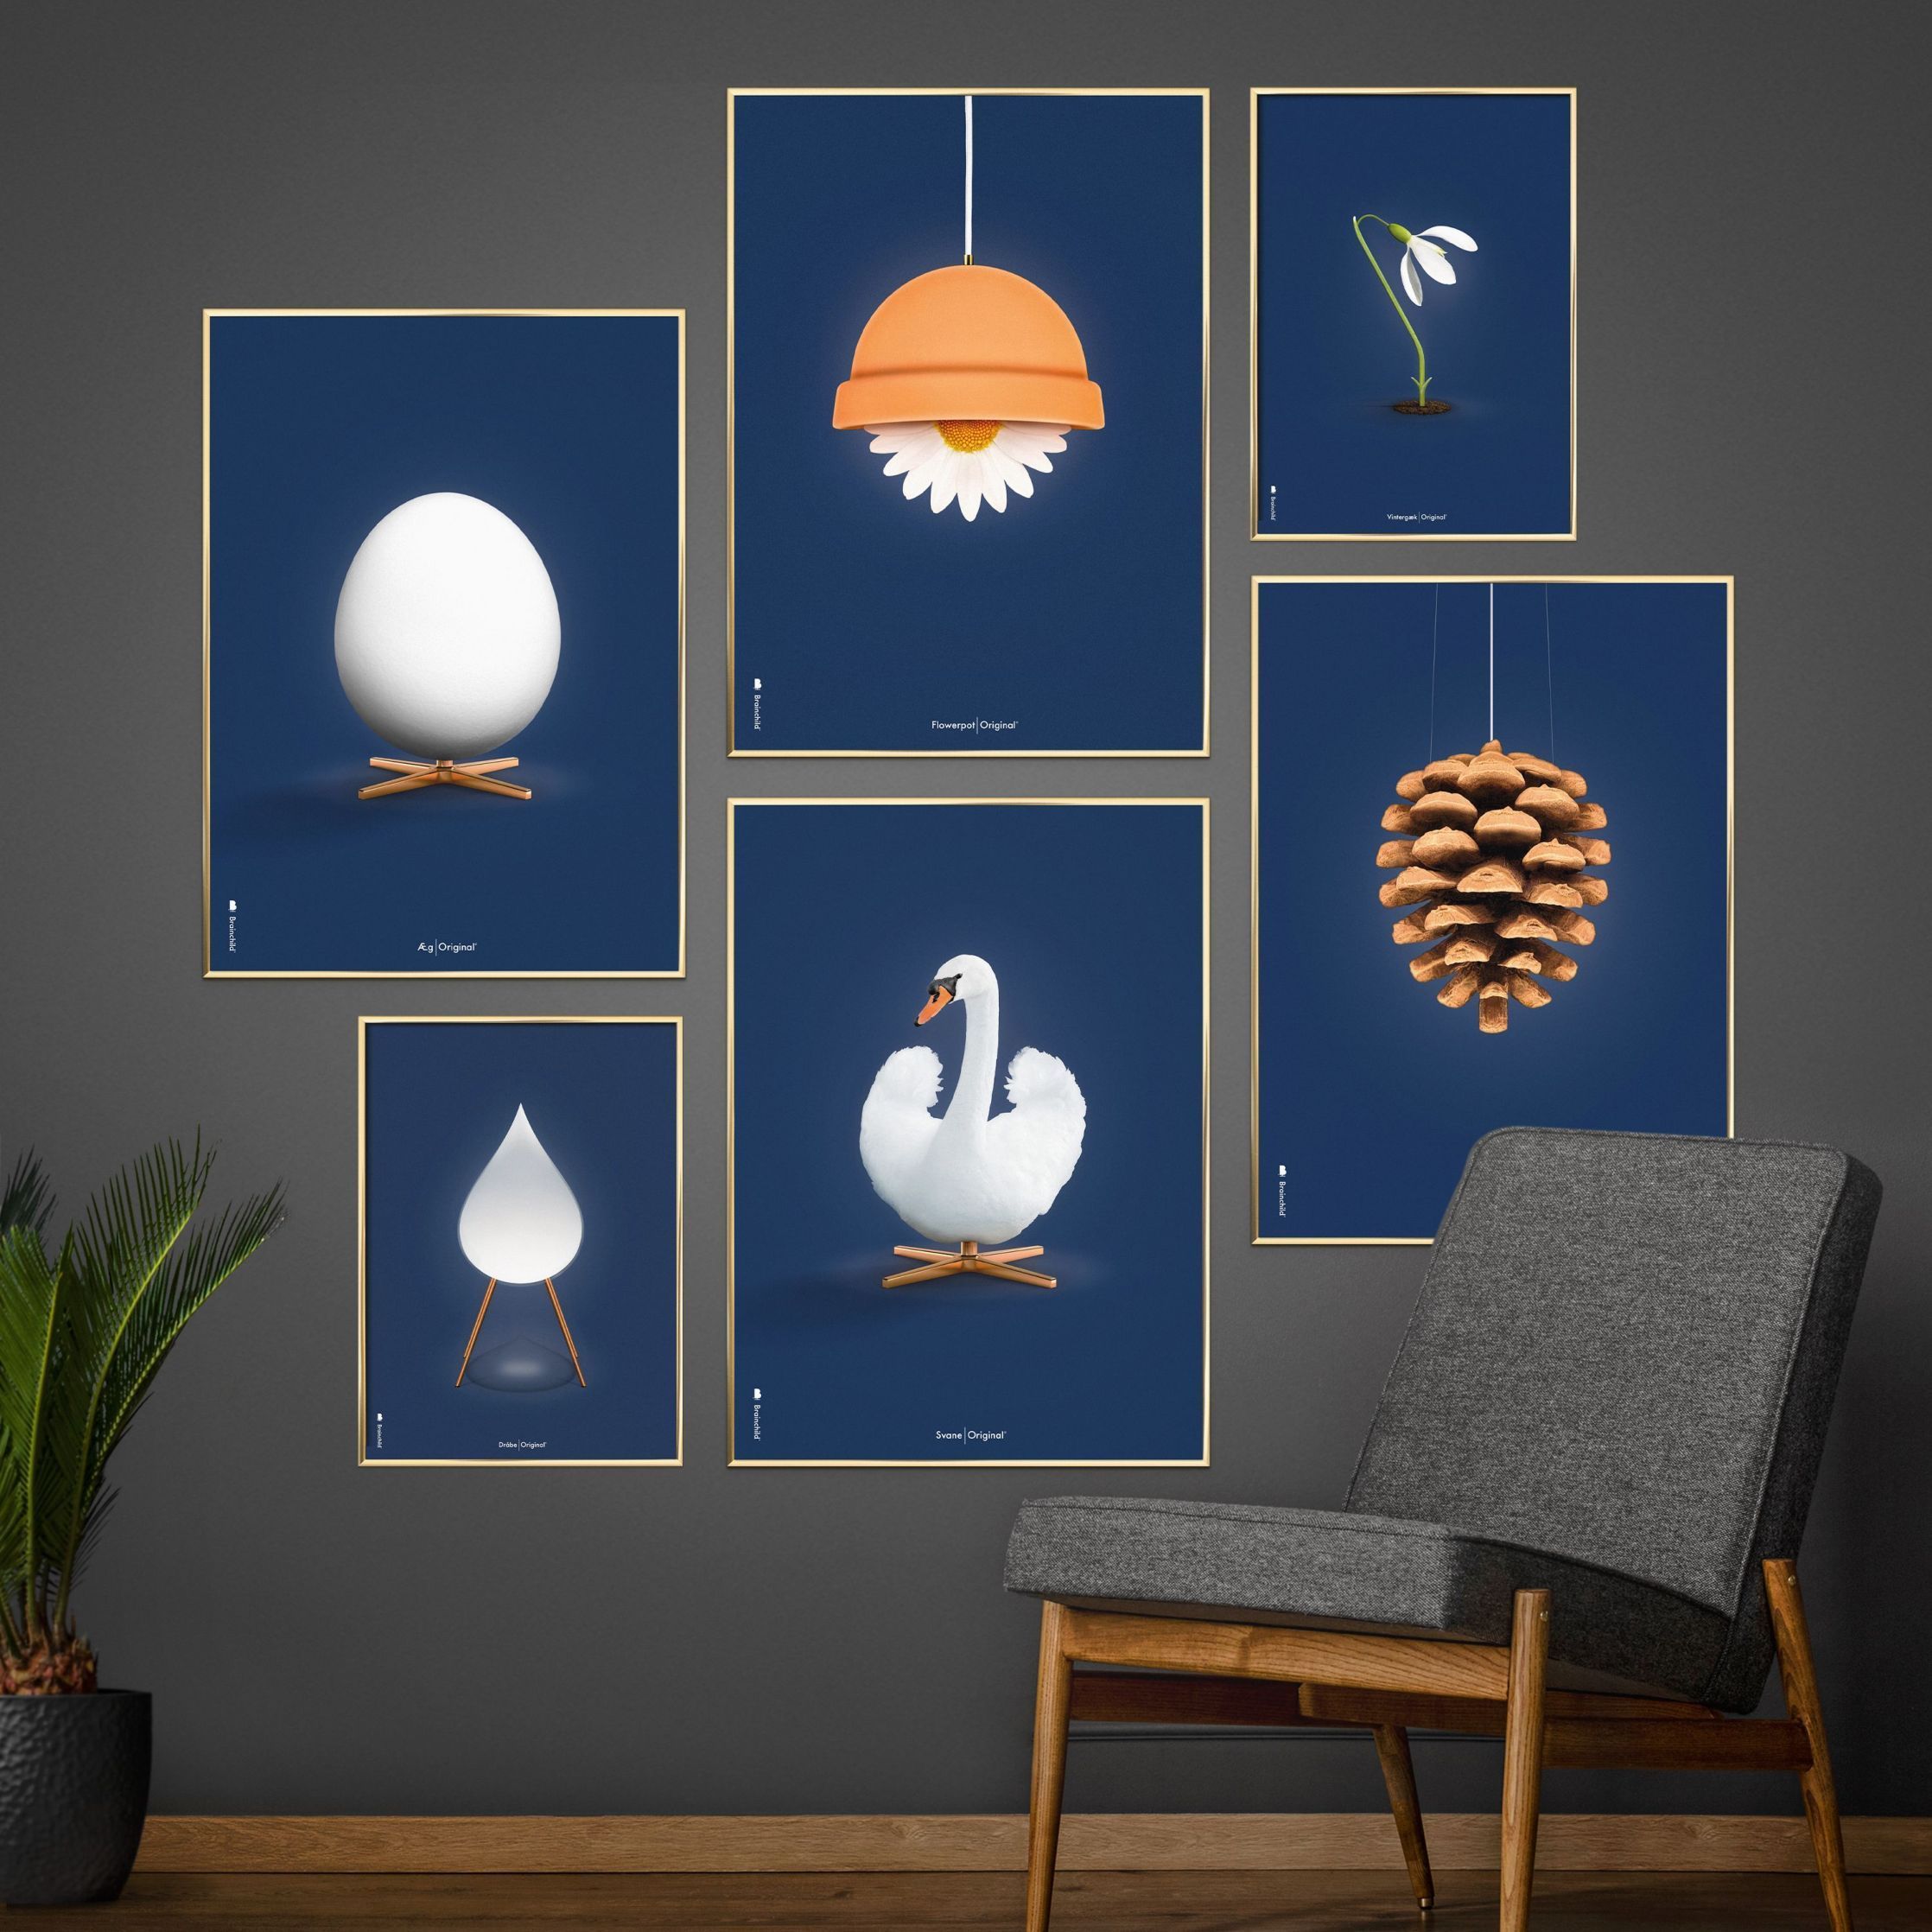 Brainchild Egg Classic Poster ohne Rahmen 70 X100 cm, dunkelblauer Hintergrund